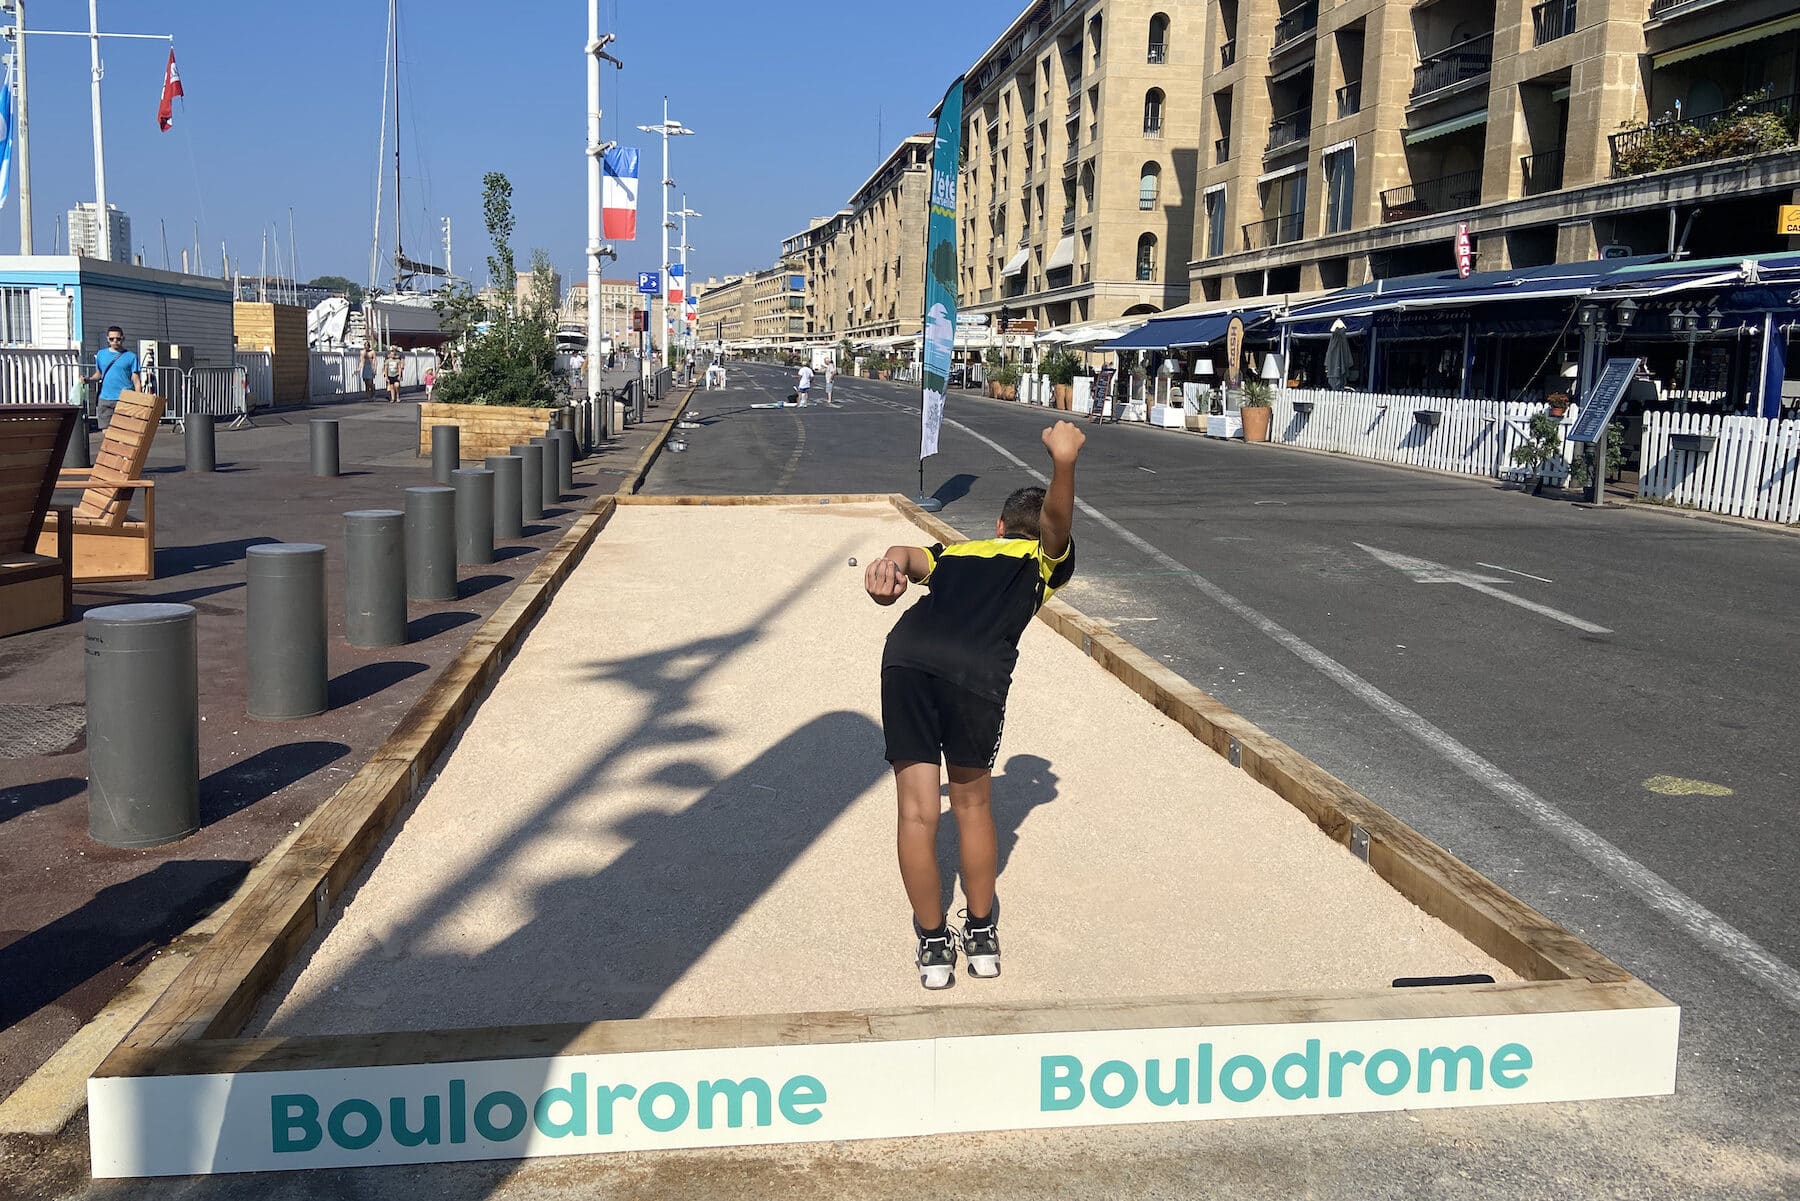 boulodrome couvert, Un projet de boulodrome couvert à l&rsquo;étude à Marseille, Made in Marseille